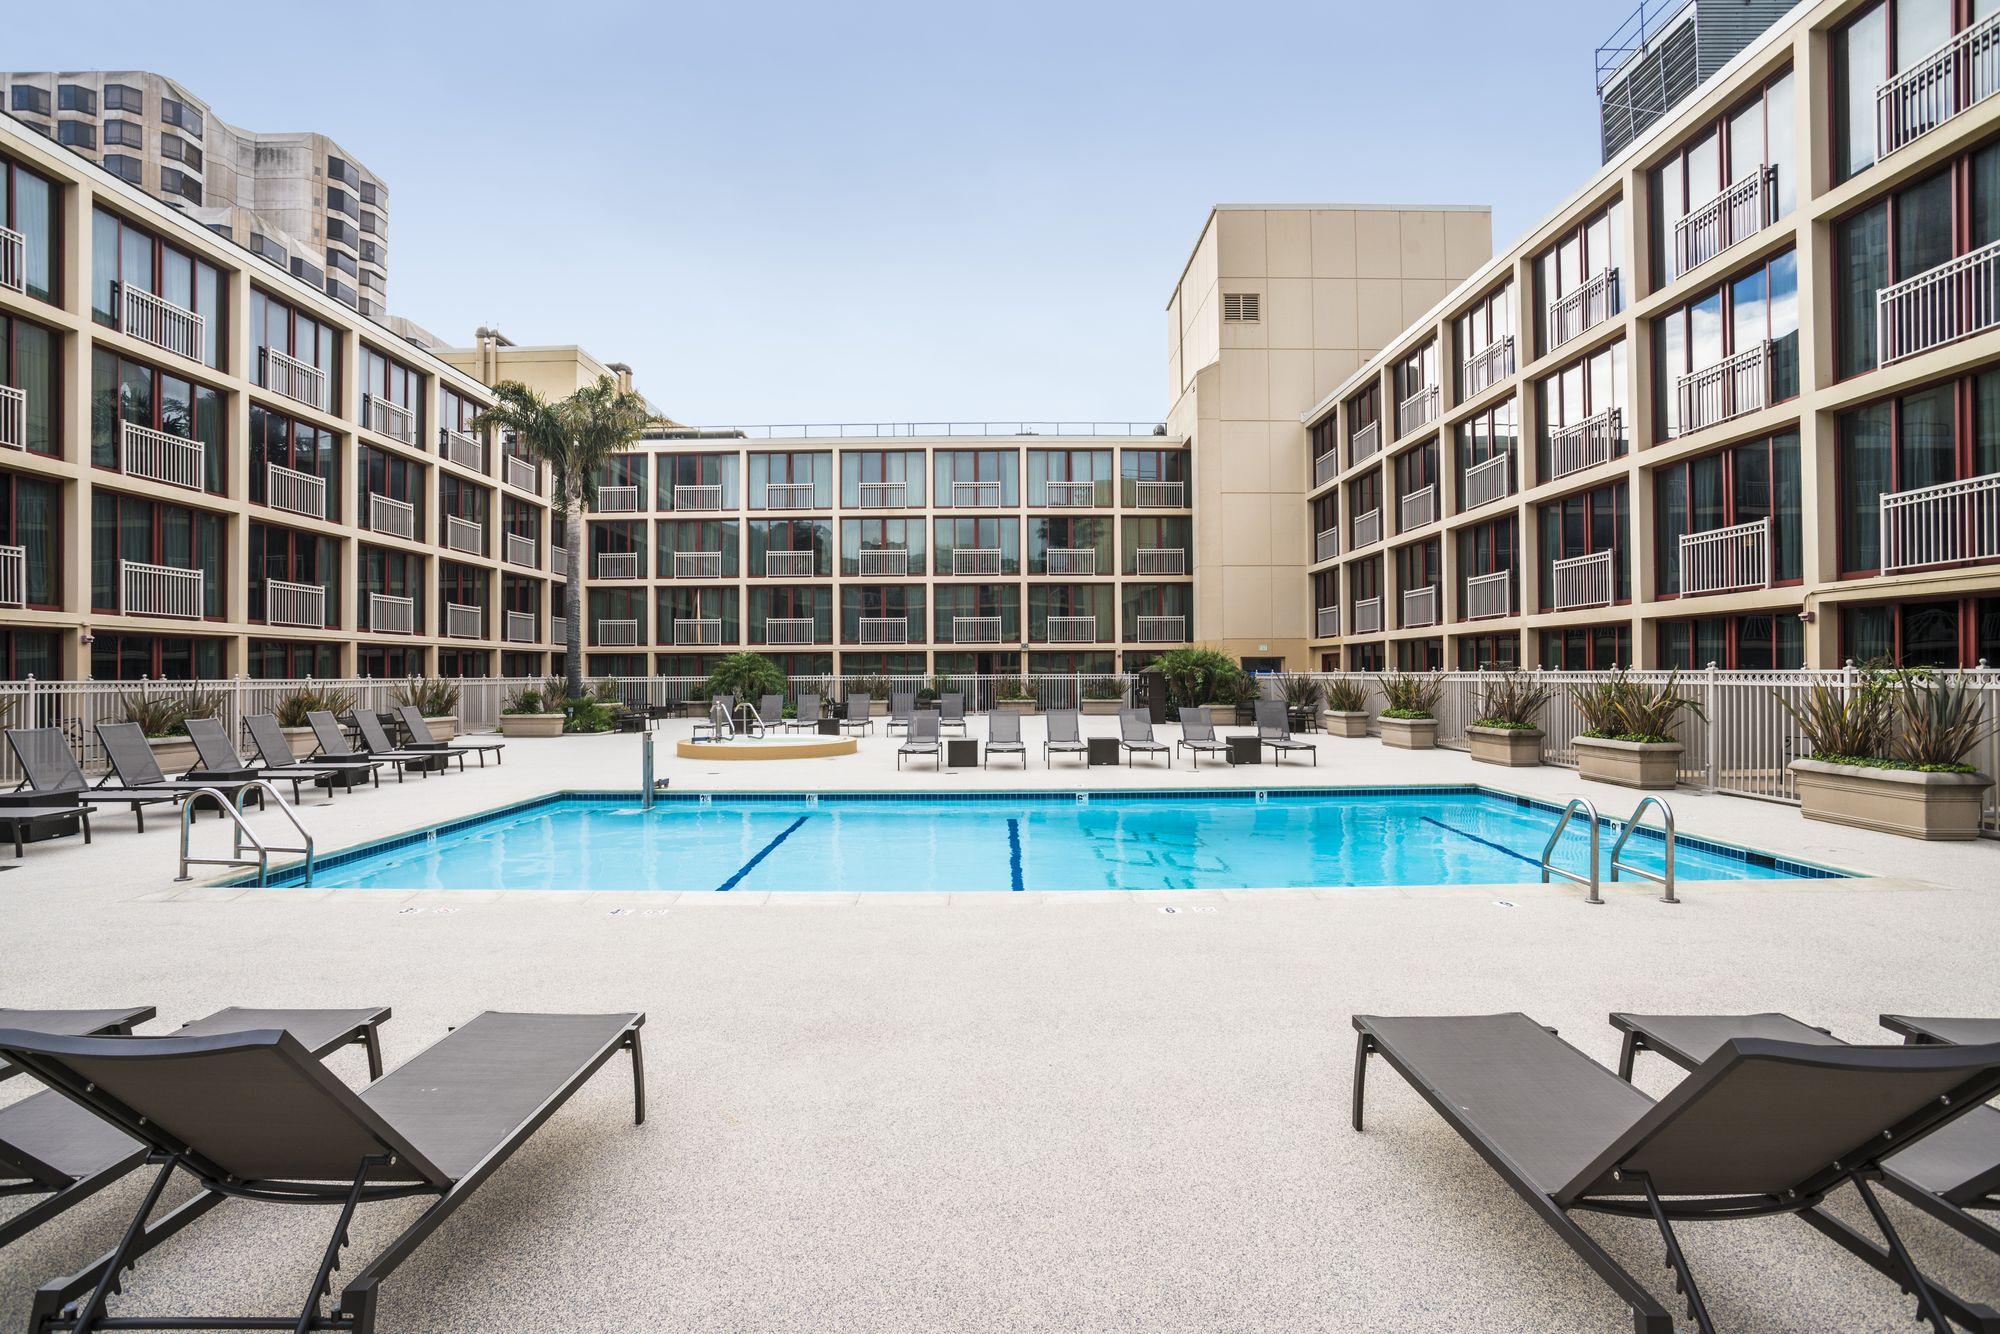 Pool view Parc 55 San Francisco - a Hilton Hotel